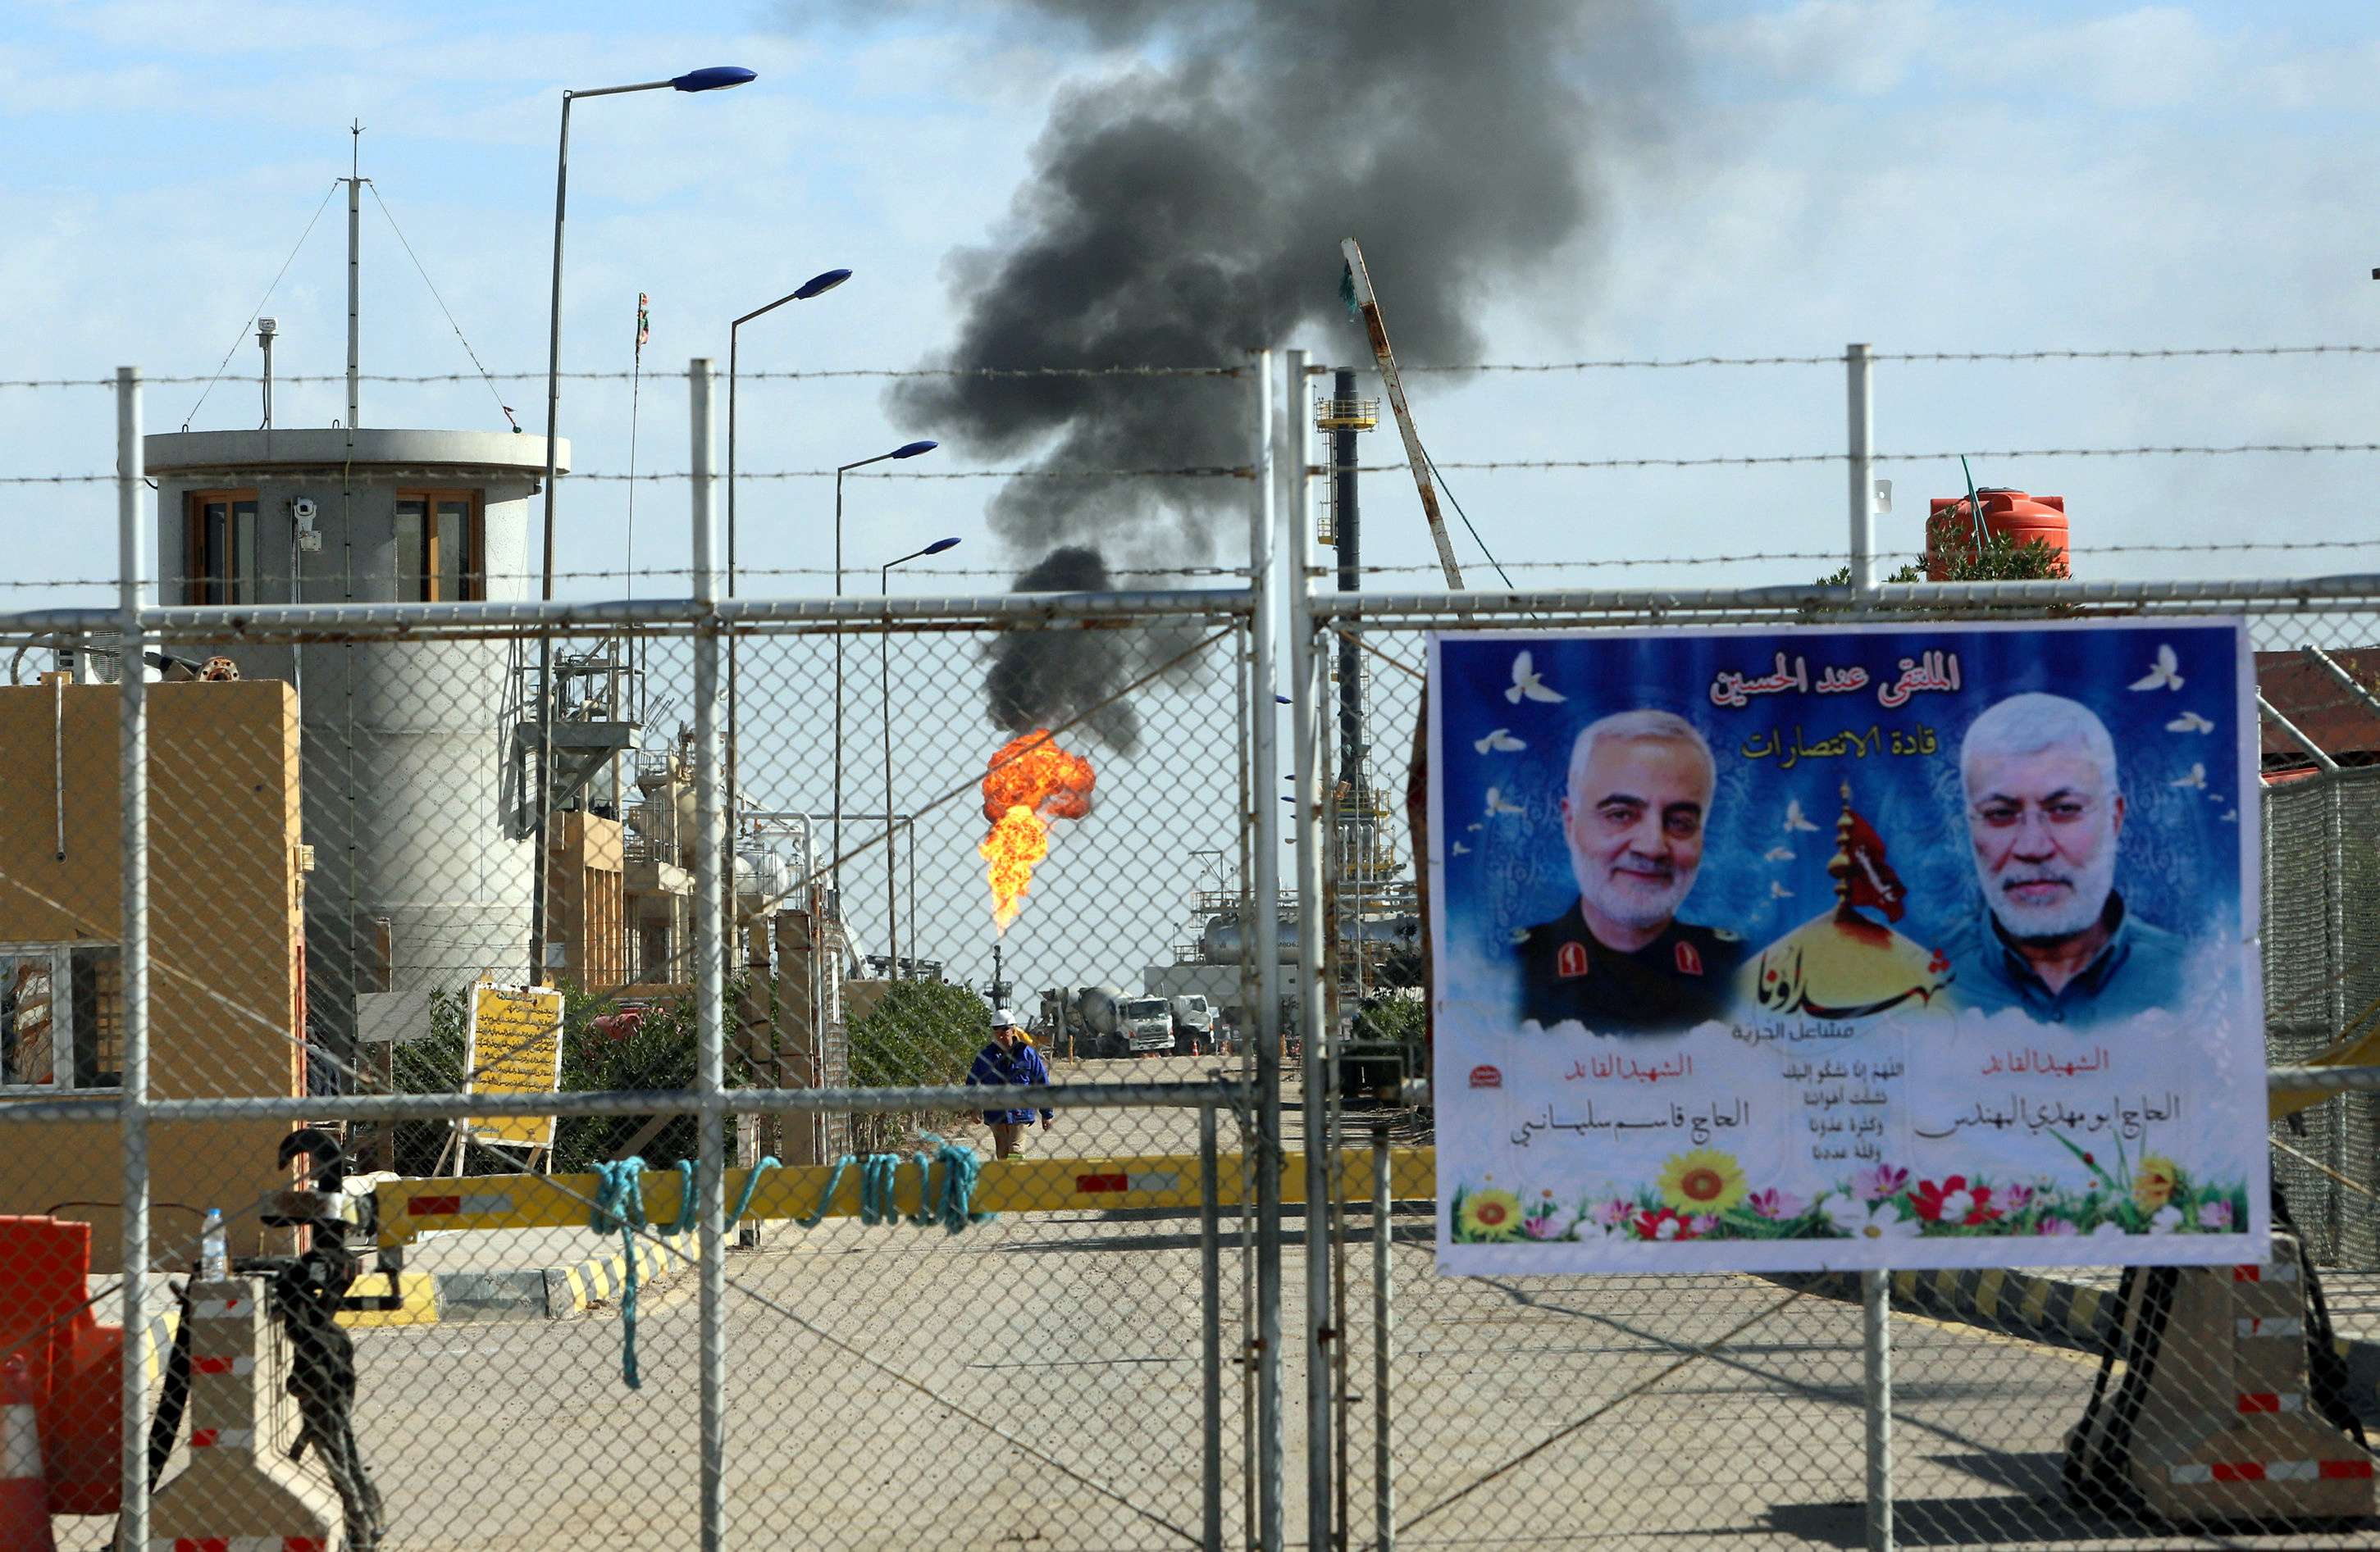 ميليشيات ايران ابتزت مرارا الحكومة العراقية باستهداف الشركات النفطية الاجنبية